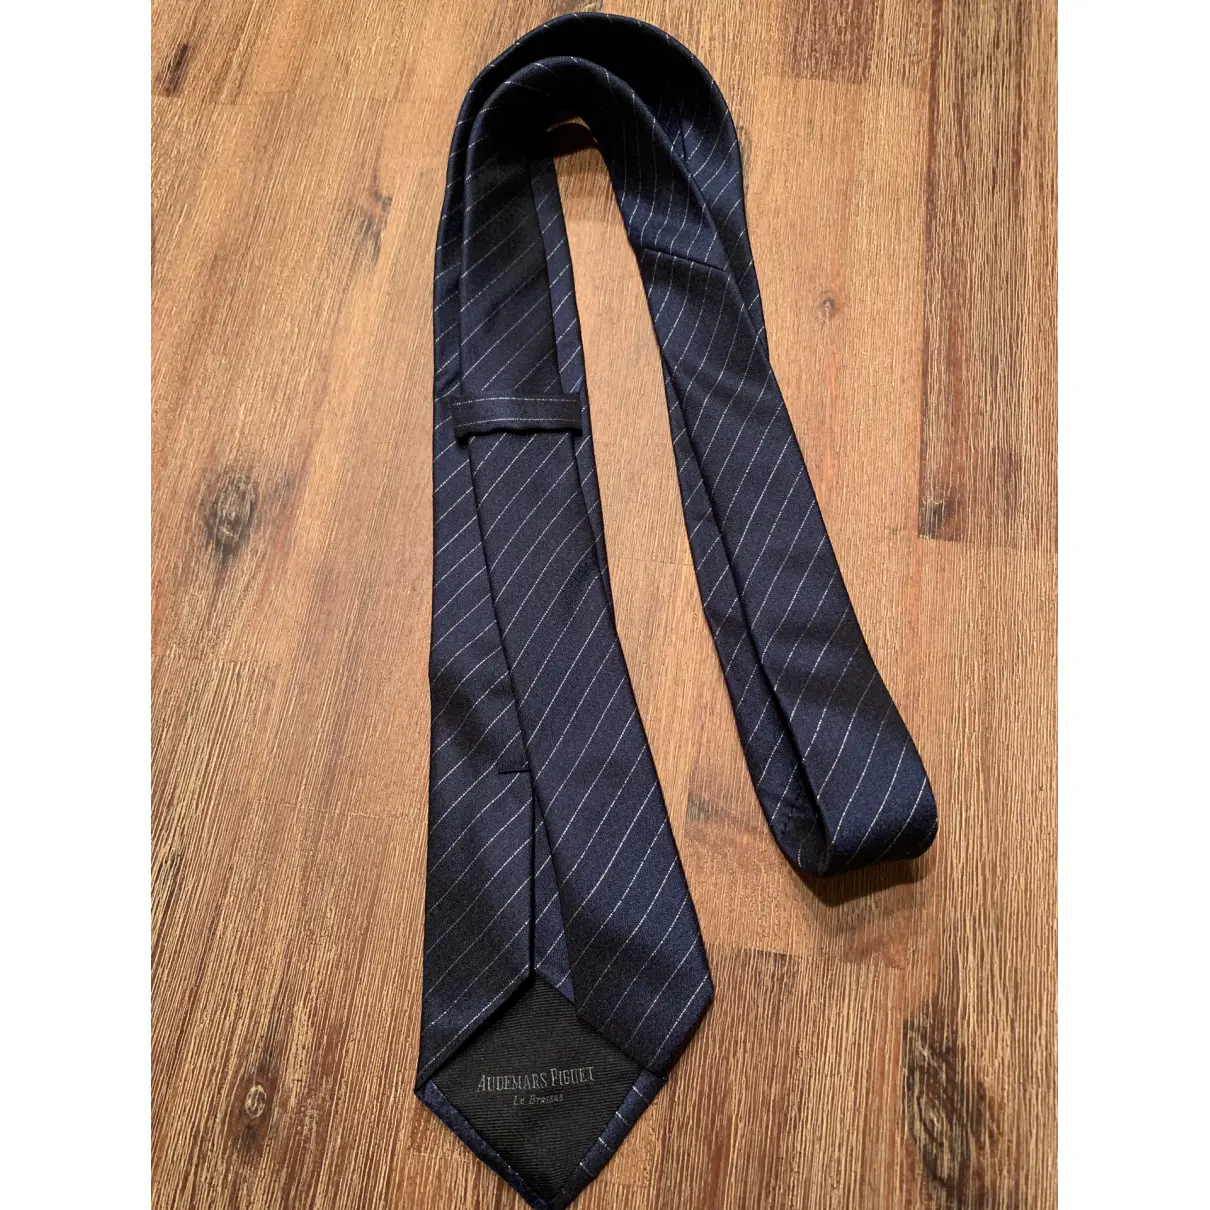 Buy Audemars Piguet Silk tie online